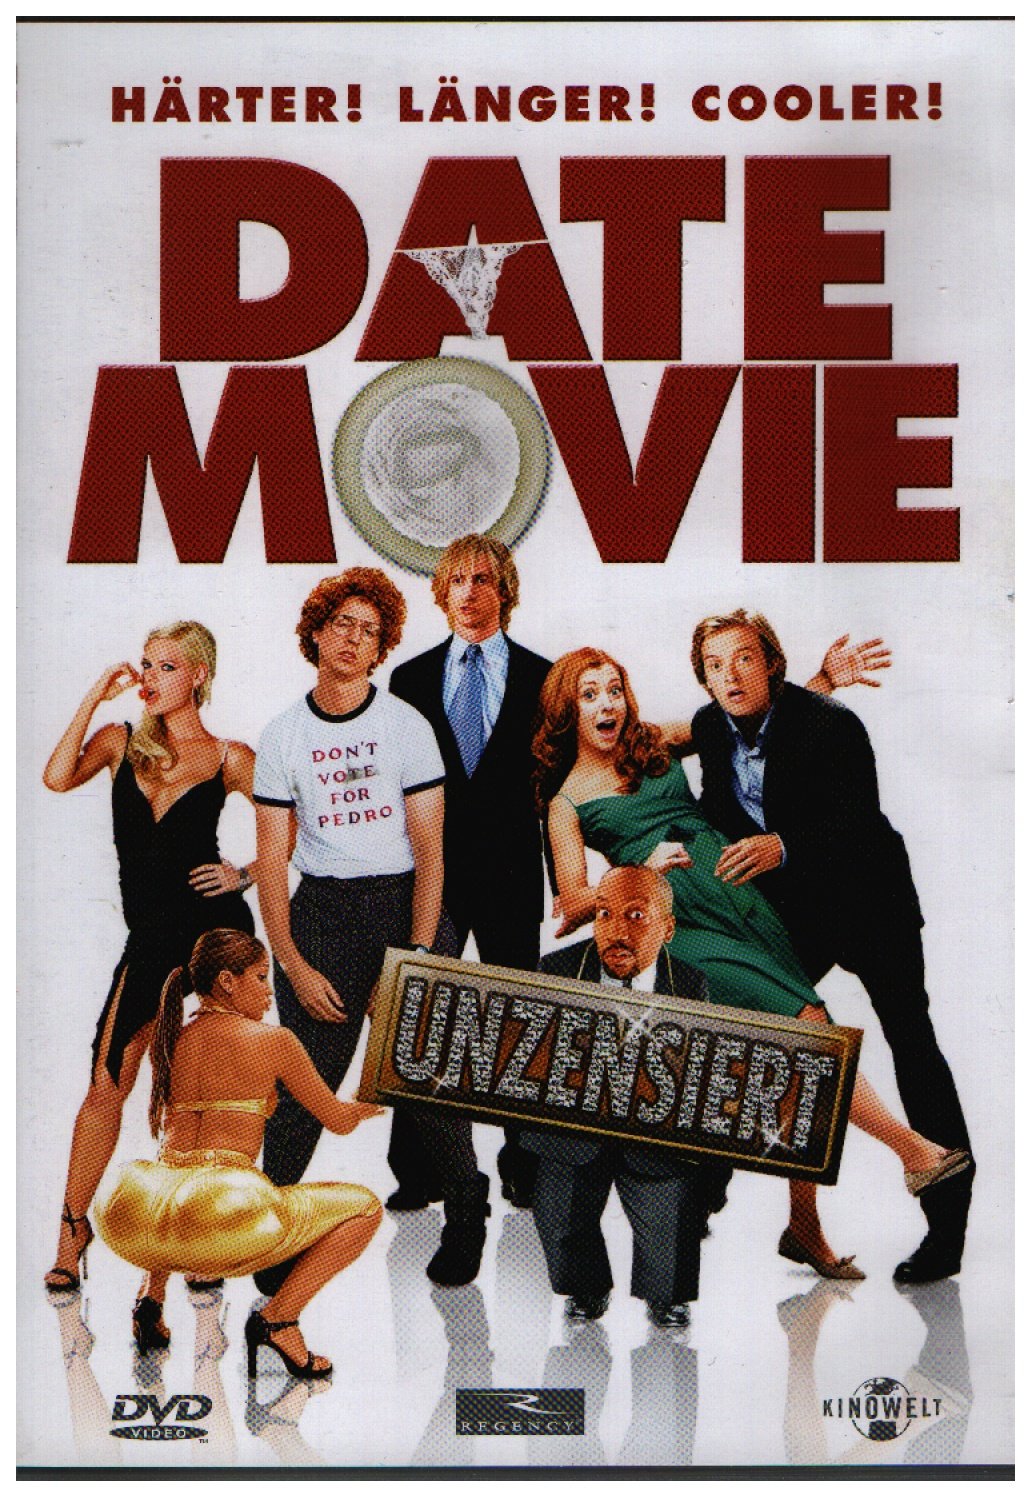 Date Movie Aaron Seltzer Film Gebraucht Kaufen A02hvu4w11zzg